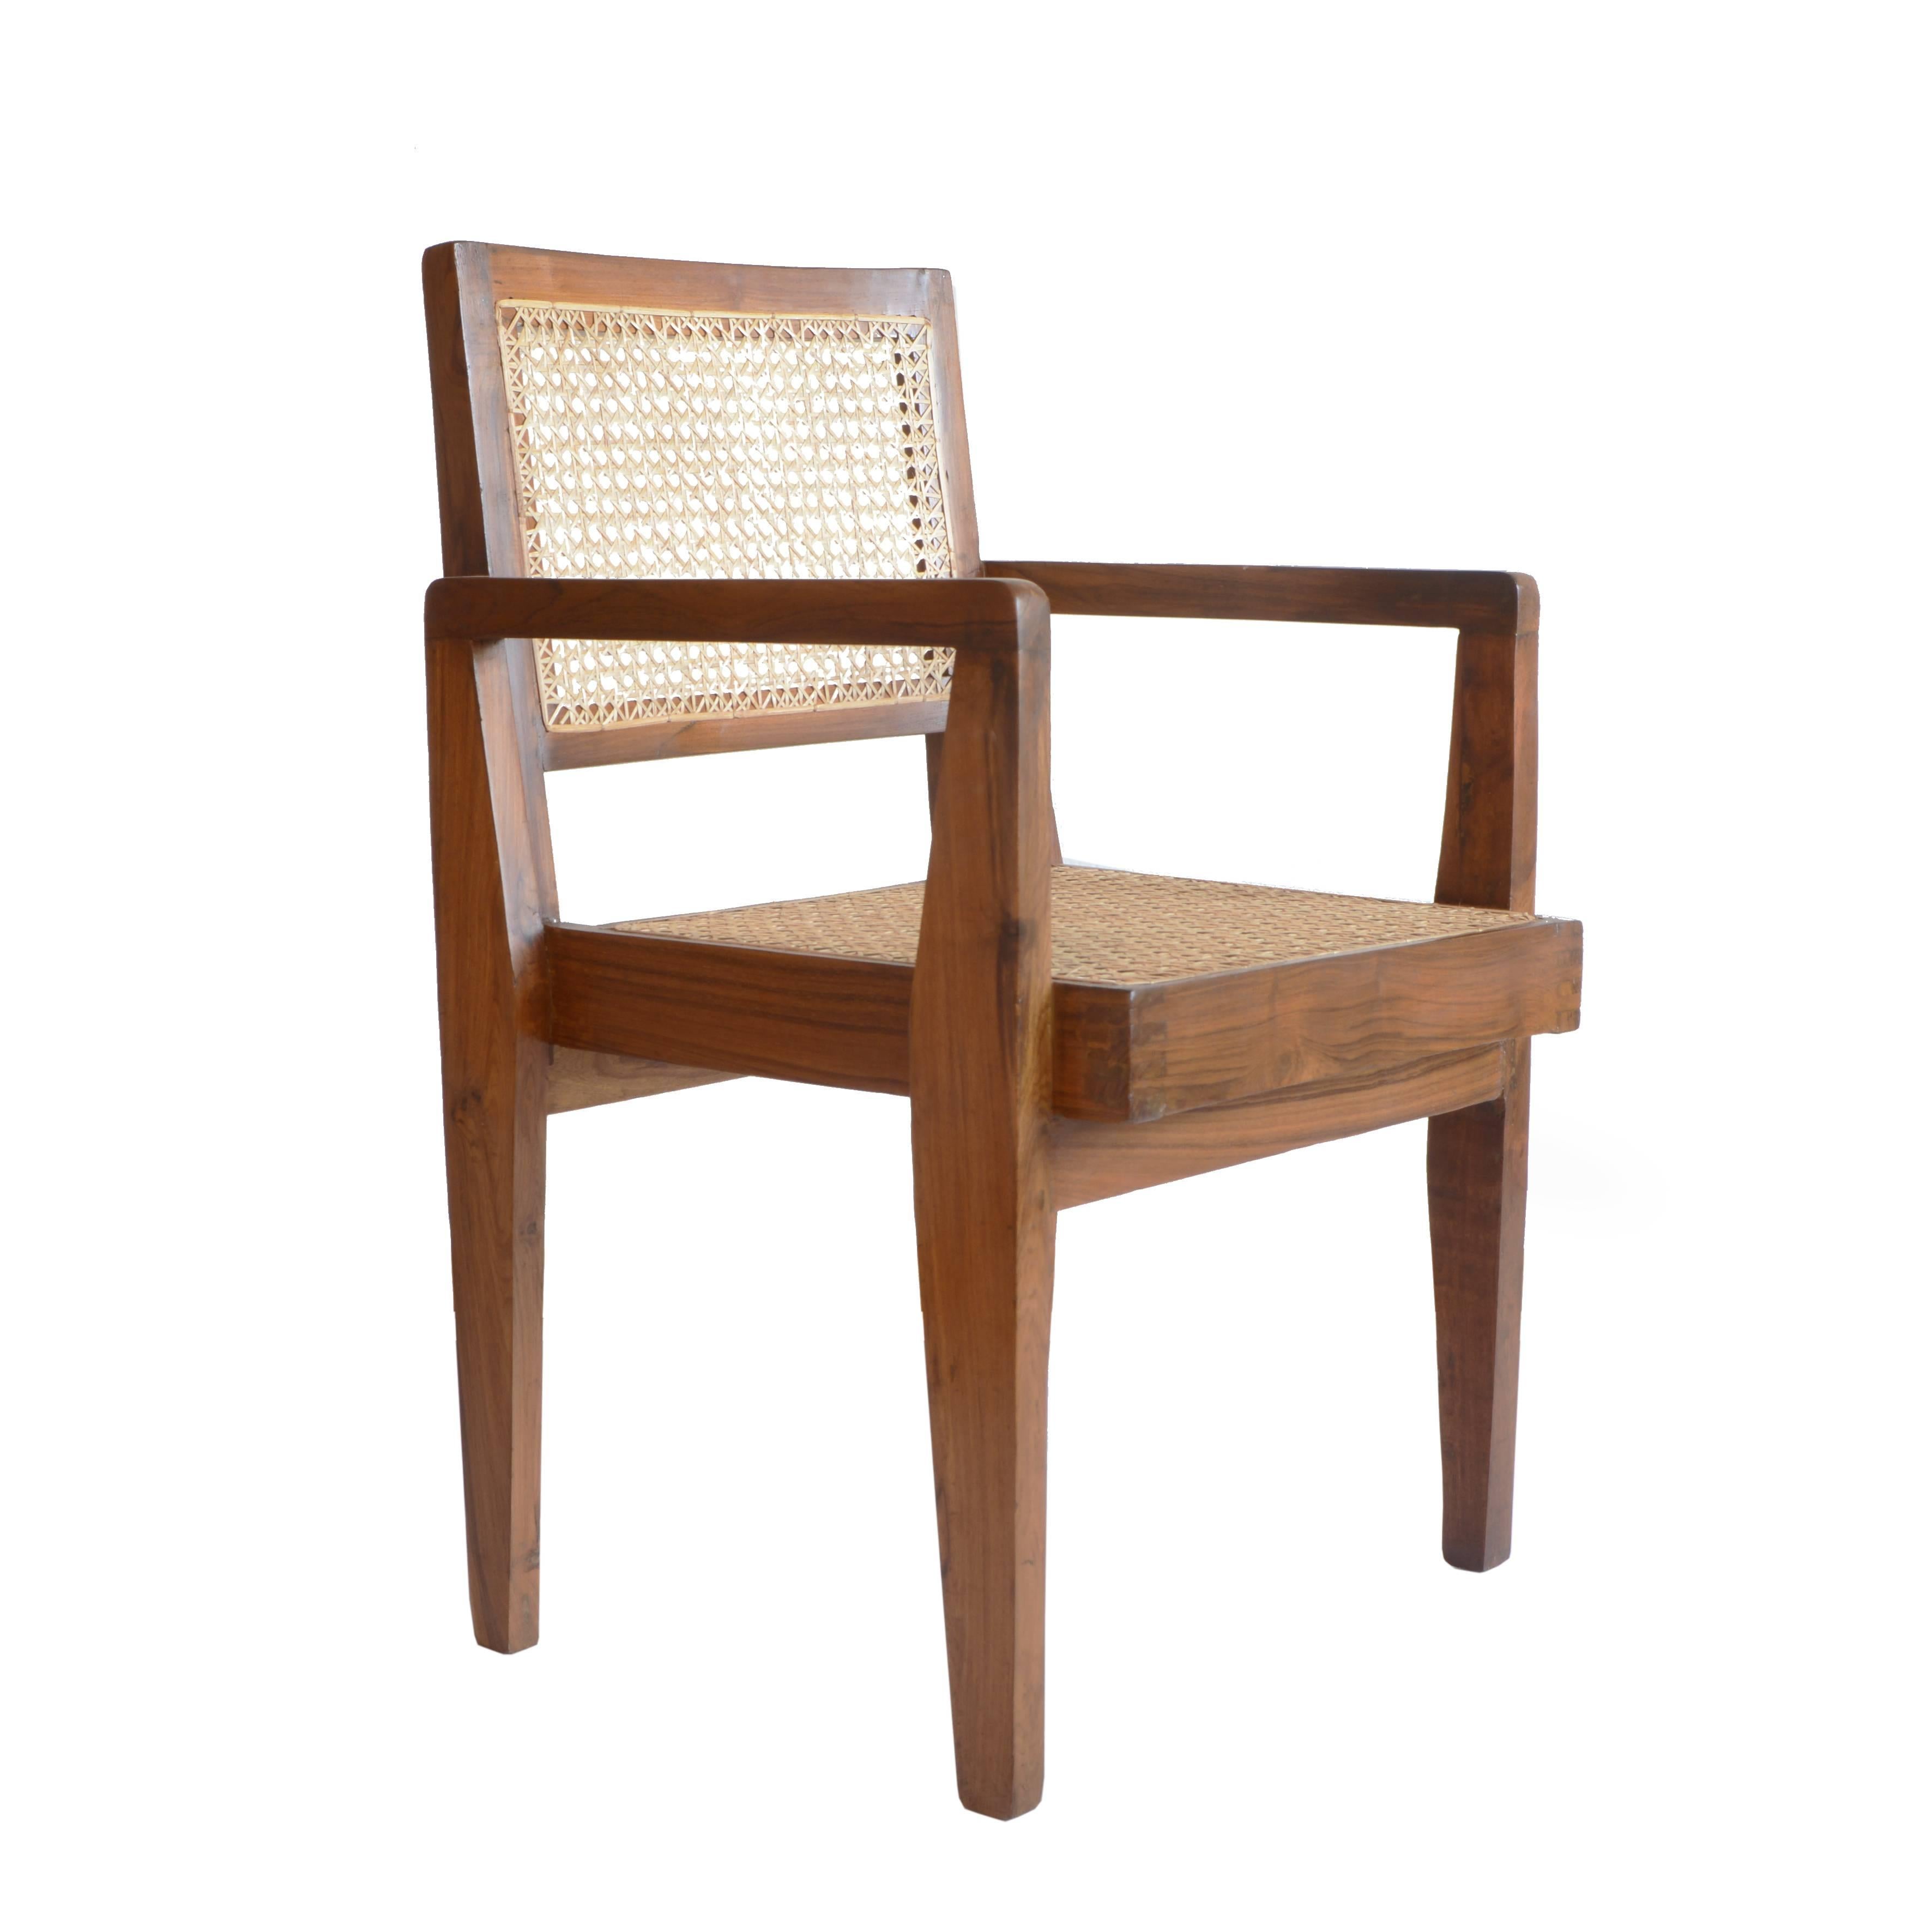 Pierre Jeanneret Chandigarh Cane Teak Chair Called Clerk's Chair